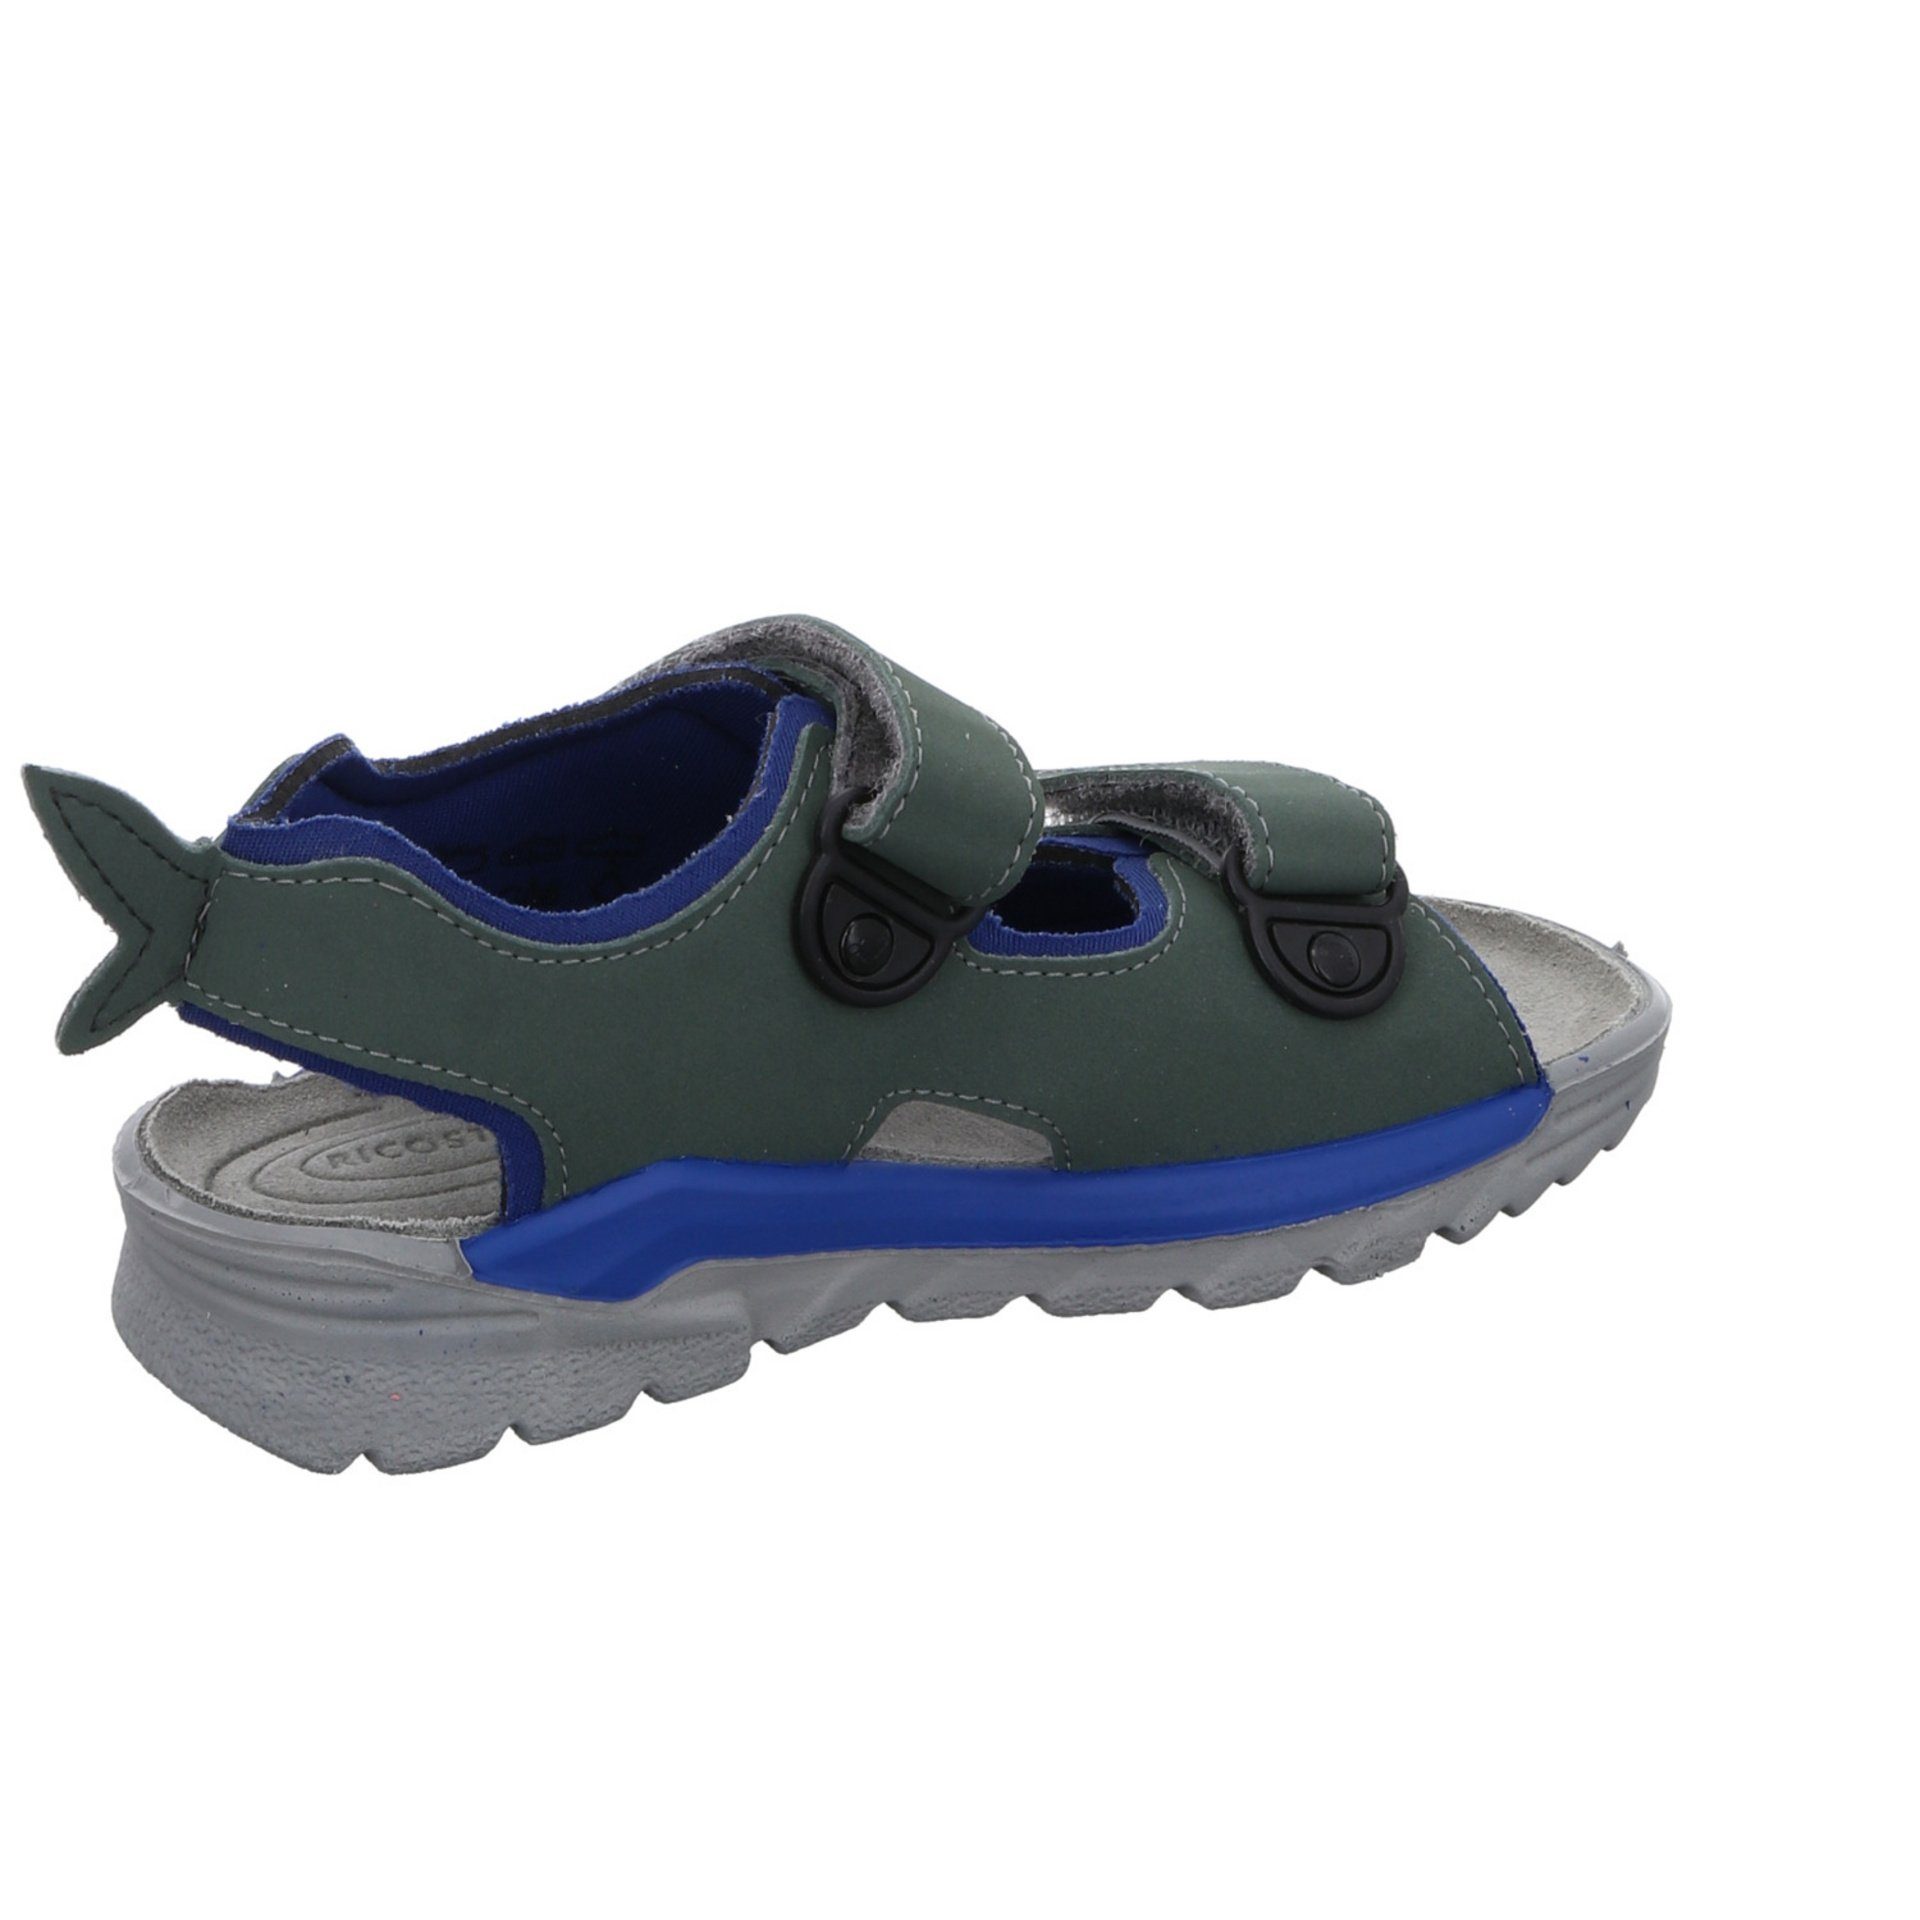 Textil Shark Sandalen Schuhe Jungen Kinderschuhe Sandale Ricosta Sandale grün